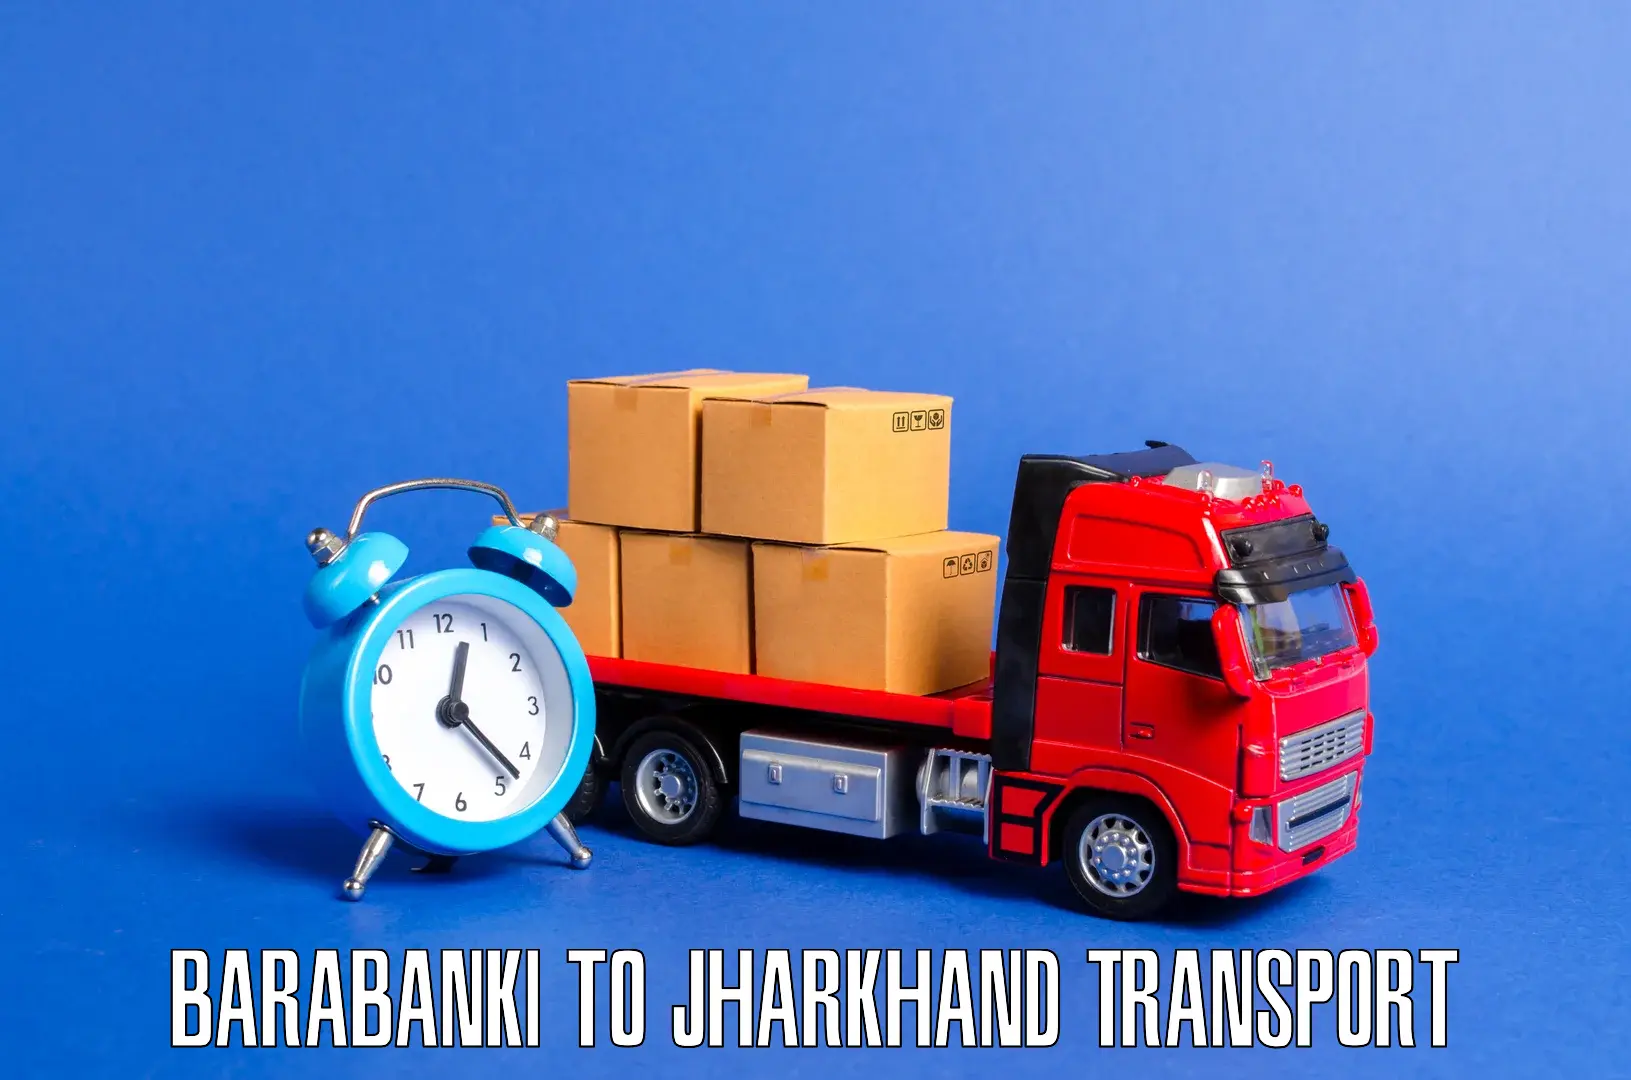 Bike shipping service Barabanki to Hariharganj